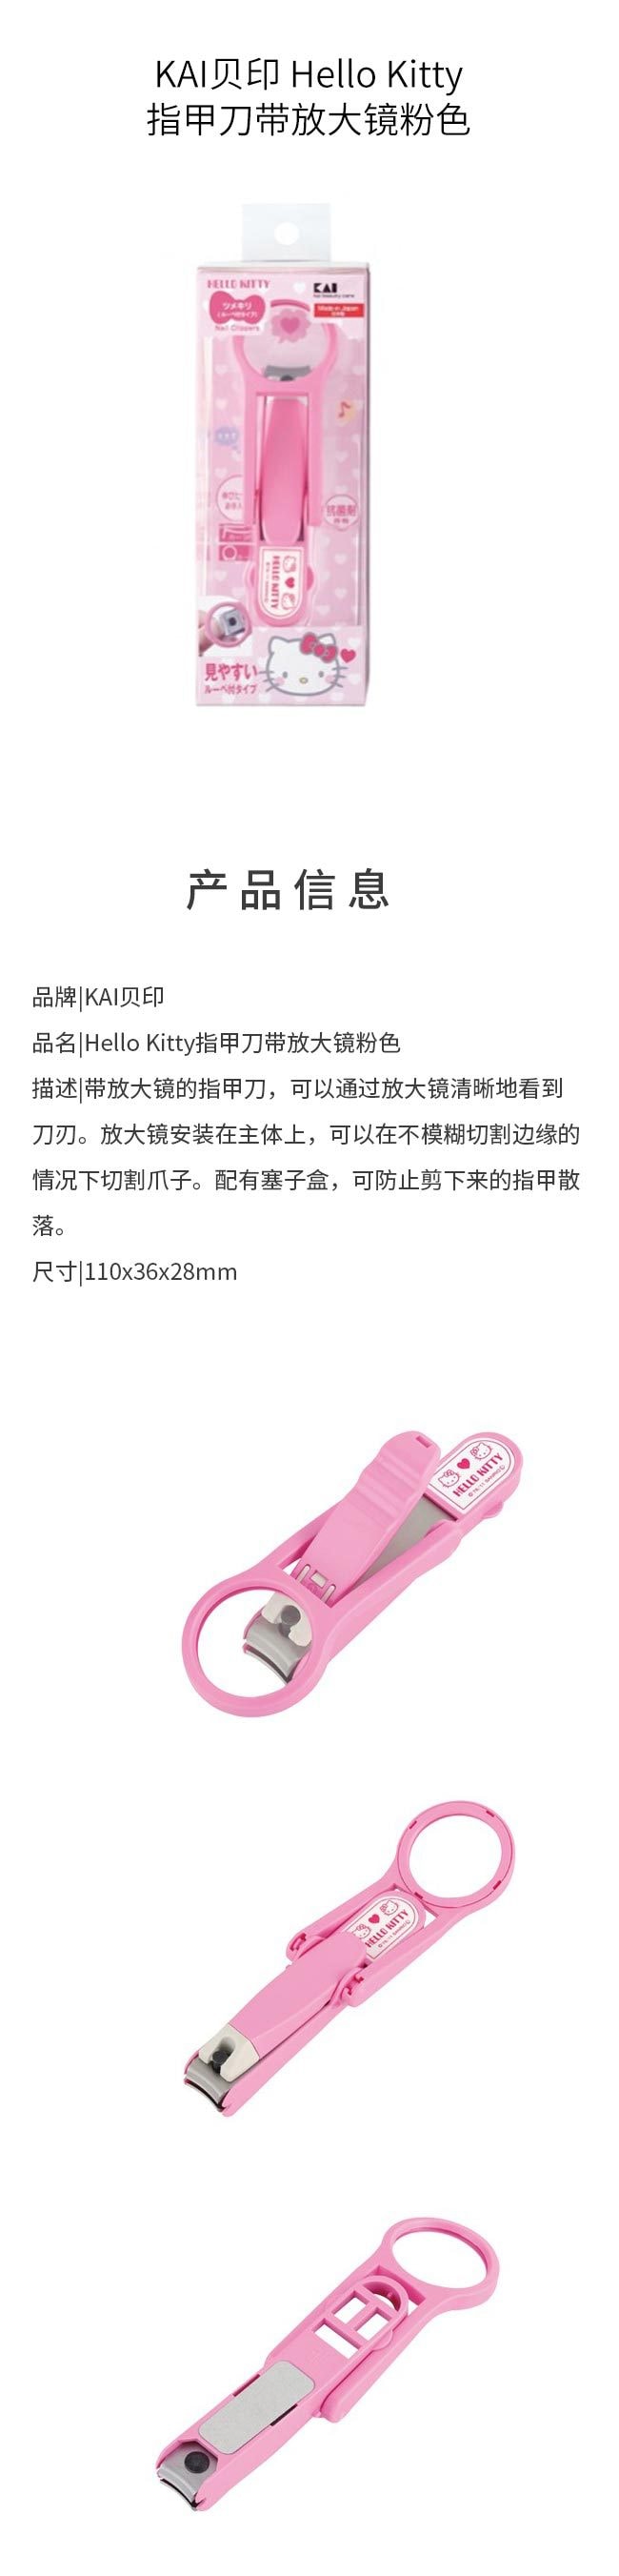 【日本直邮】KAI贝印 Hello Kitty指甲刀 带放大镜 粉色